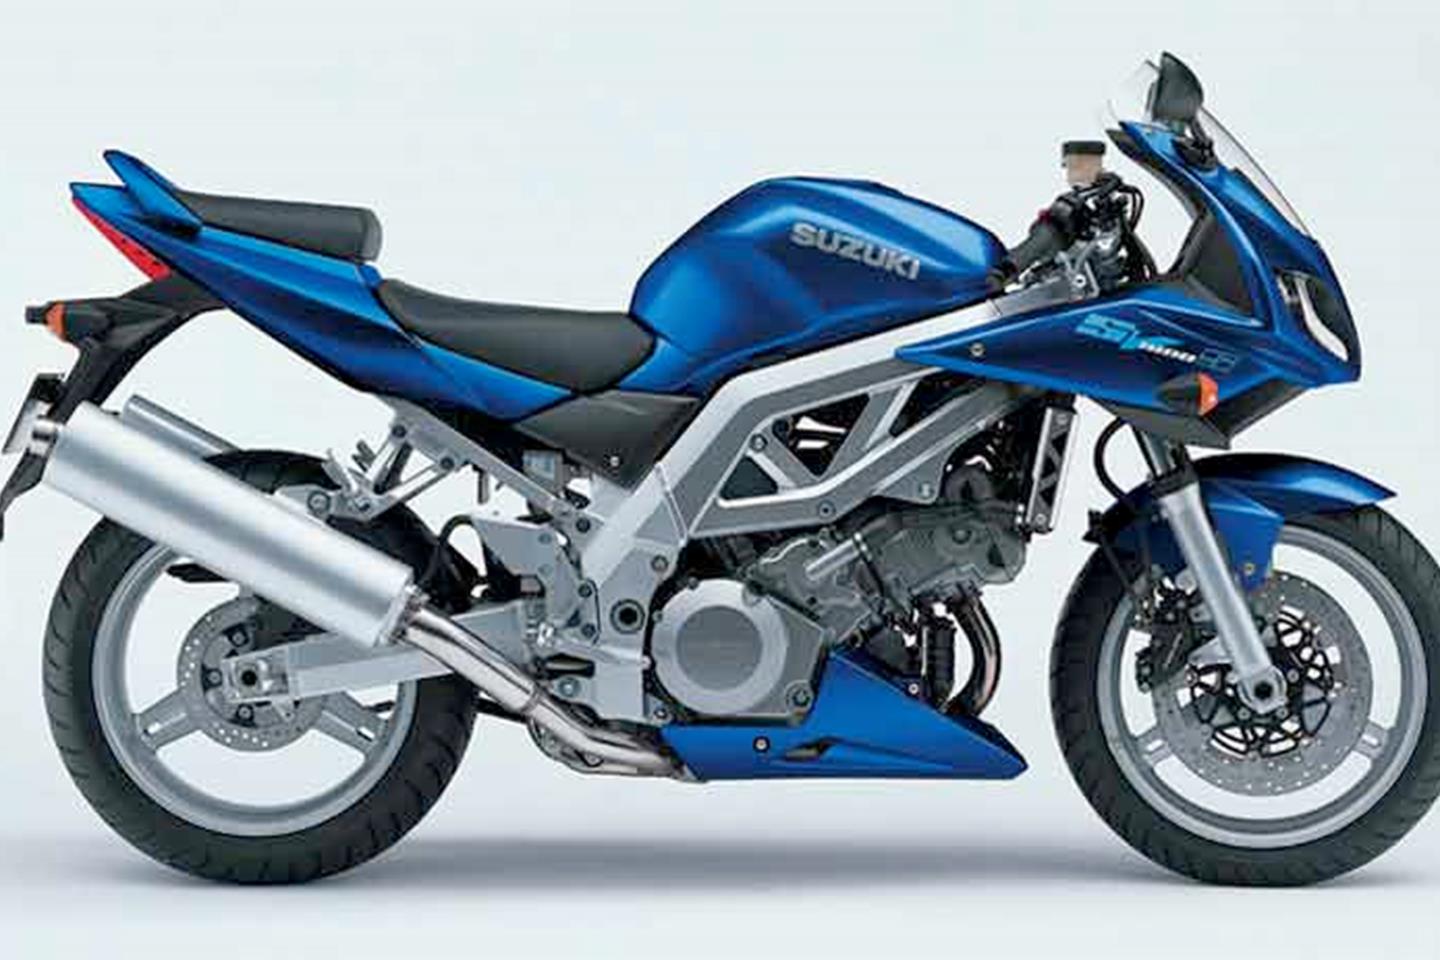 Suzuki SV1000 (2003-2007) Review | Speed, Specs & Prices